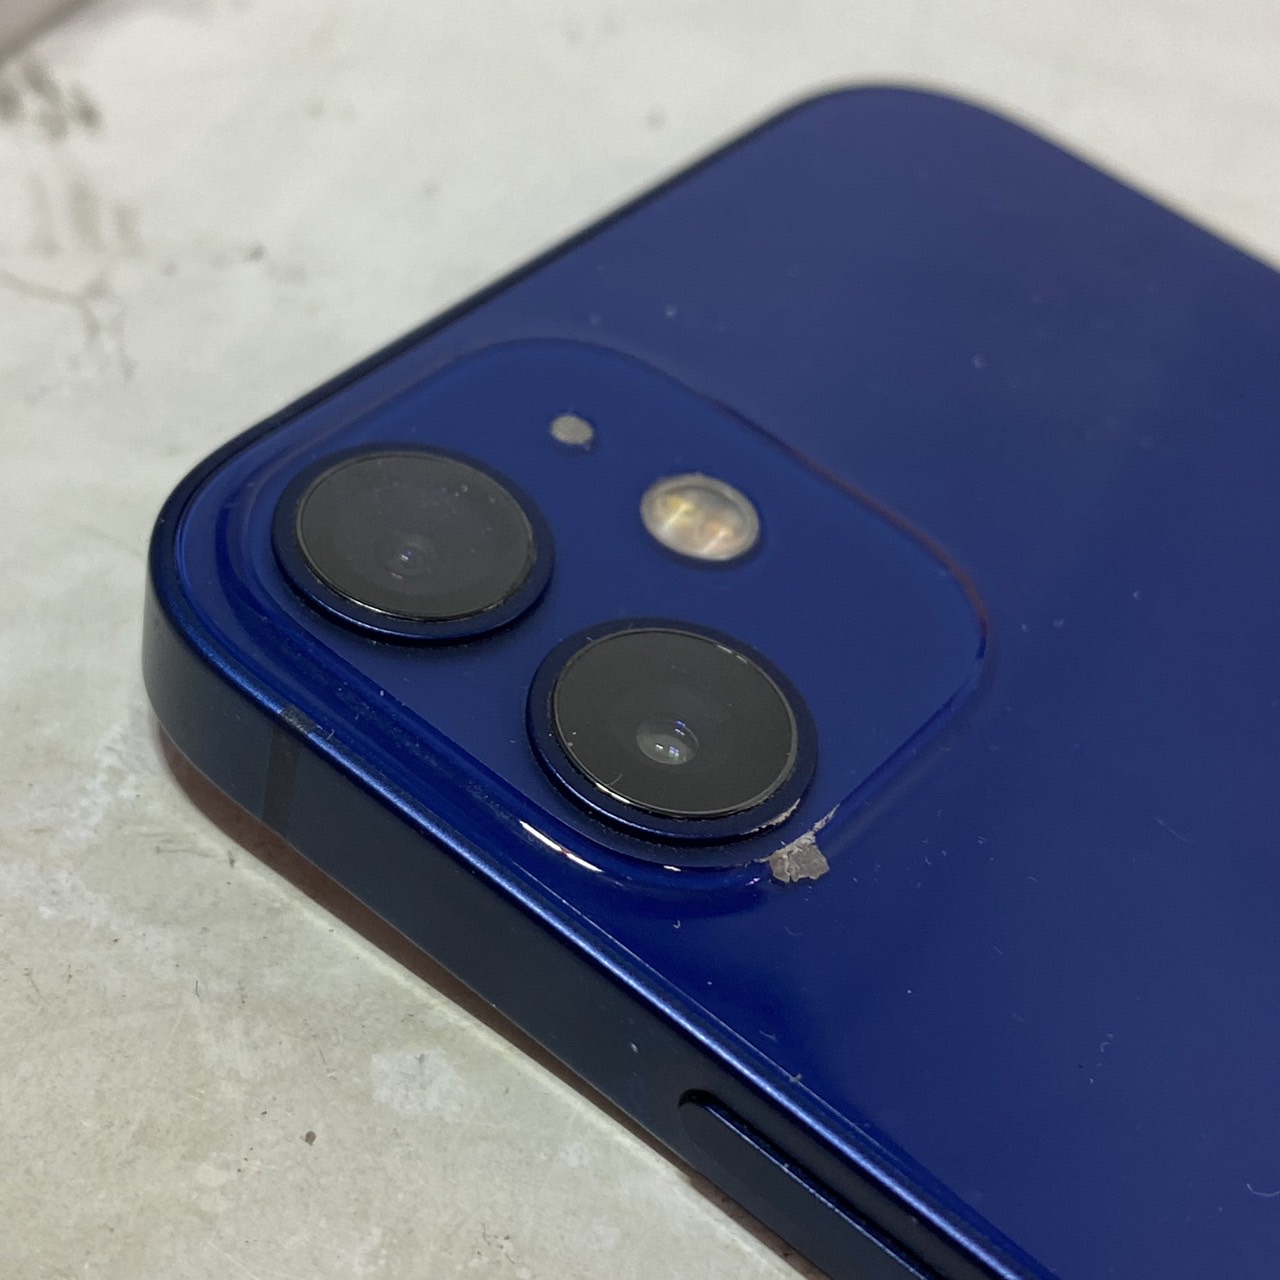 ︎︎︎︎︎︎【ジャンク】iPhone 12mini アップル ブルー